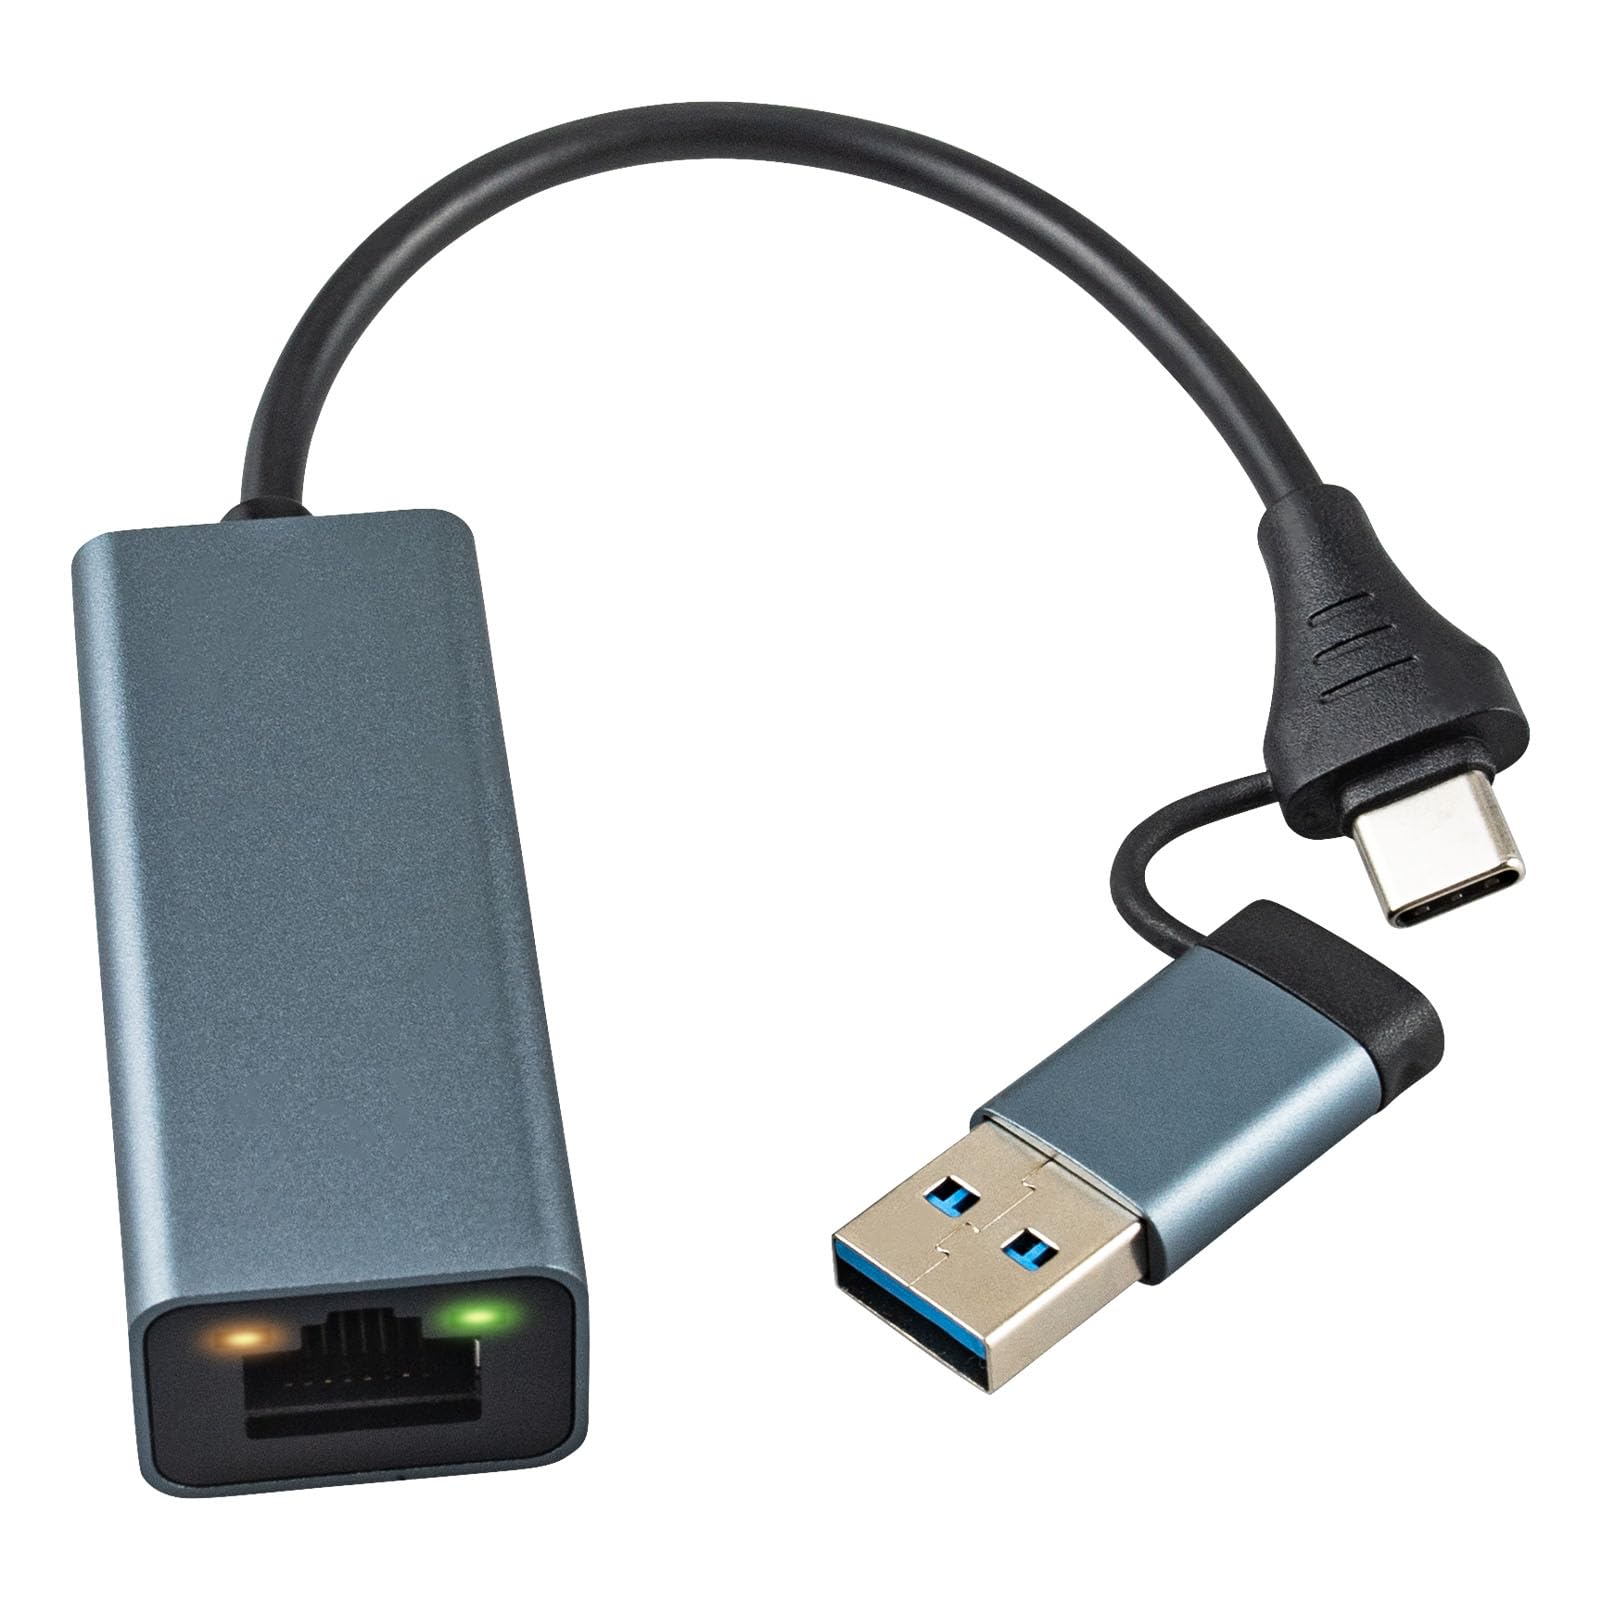 商品情報商品の説明説明 製品仕様 出力ポート：USB-A オス +USB C オス 入力ポート：LANポート 材質：アルミニウム合金 サイズ：5.9*2.3*1.6cm 重さ：約30グラム 動作時温度：0°~65°C LANポート: 最大通信速度100Mbps 主な対応機種： Nintendo Switch: Nintendo Switch/Nintendo Switch(有機ELモデル) 非対応機種：Wii、 Wii Ui、 Wii Mini ノートPC：MacBook (2015 / 2016 / 2017 / 2018/2019/2020/2021/2022/2023 ) MacBook Pro (2015 / 2016 / 2017 / 2018 / 2019 / 2020/2021/2022/2023) MacBook Air (2018 / 2019 / 2020/2021/2022/2023) 対応携帯電話機種: iPhone15シリーズ，HUAWEI,SamSung，USB Type Cインターフェイスタイプを備えたその他の携帯電話 i対応システム： iWindows (11/10/8) iMac (OS X 10.6以降) iLinux (2.6.14以降) iイーサネットがうまく接続できない場合の対処法 iお使いの端末機器のOSをアップデートしてください 高速イーサネット接続 iUSBLANアダプター は最大100Mbpsまでの高速回線速度になり、安定また超高速のインターネット通信が可能です。市場に 10Mbpsのみ までのLANアダプタと比べ、ネット接続は遅くなれないようになります主な仕様 ?【あなたの理想的な選択】USB lan ネットワークアダプターには USB Type C+USB3.0コネクタが含まれており、より多くのインターフェイス タイプのデバイスを接続できます。RJ45の変換アダプタを通してスマホ/タブレット/ラップトップをルーターと接続し、イーサネットと有線で繋がります。Wi-Fiより速くそして安定のスピードでデータを転送し、在宅勤務 ウェブ会議 海外旅行 出張 バッファリングせずにインターネットサーフィンをしたり、遅滞なく映画を見たり、フリーズせずにゲームをプレイしたりするという楽しみを喜べます。br?【フルスピードでサーフィン】最大100Mbpsの安定した接続速度を実現します。 10Mbps/1Mbpsネットワークとの下位互換性があります。 当社の RJ45 Type-C/USB3.0 to LAN イーサネット ネットワーク アダプターは、中断することなく最大速度で大量のダウンロードをサポートします。br?【シンプルな扱い&プラグ＆プレイ】iPhone/iPad/iMac/Macbookデバイス→RJ45変換アダプタ→RJ45ケーブル→ルーター。手順：スマホのWi-fiとモバイルデータ通信をOFFにする。スマホの設定をタップ→Ethernet(イーサネット)をタップ→USB10/100M LANをタップ→ルーターからのIPを受け入れた後、インターネットとの通信が始まります。br?【インジケーターライトプロンプト】USB LAN アダプターはオレンジ点滅とグリーン点灯のLEDランプが付いており、USB-C/USB3.0 to LAN有線アダプターの接続情報を一目で確認できます。ポートにぴったり繋いで、信号の転送が保障されて、現在ウェブ会議や在宅勤務、映像、生放送、番組、ゲームなど幅広い場合でもインターネットを快適に使えています。br?【幅広い互換性】USB C&USB3.0ポートが搭載の機種に対応します。iPhone 15 シリーズ、MacBook Air、MacBook Pro、iMac、iMac Pro、iPad Pro、XPS 、Spectre、ASUS ROG GL/G5、Legion Y720、Thinkpad P 50/70、Acer Aspire、V15/V17 Nitro、Galaxy S21/S20、Mate 30 Pro/Mate 10 Pro/P40 Pro/P10 Plus及びSwitch等に対応可能ですおよび他の多くUSB-C ラップトップ、タブレット、スマートフォンと互換性があります。